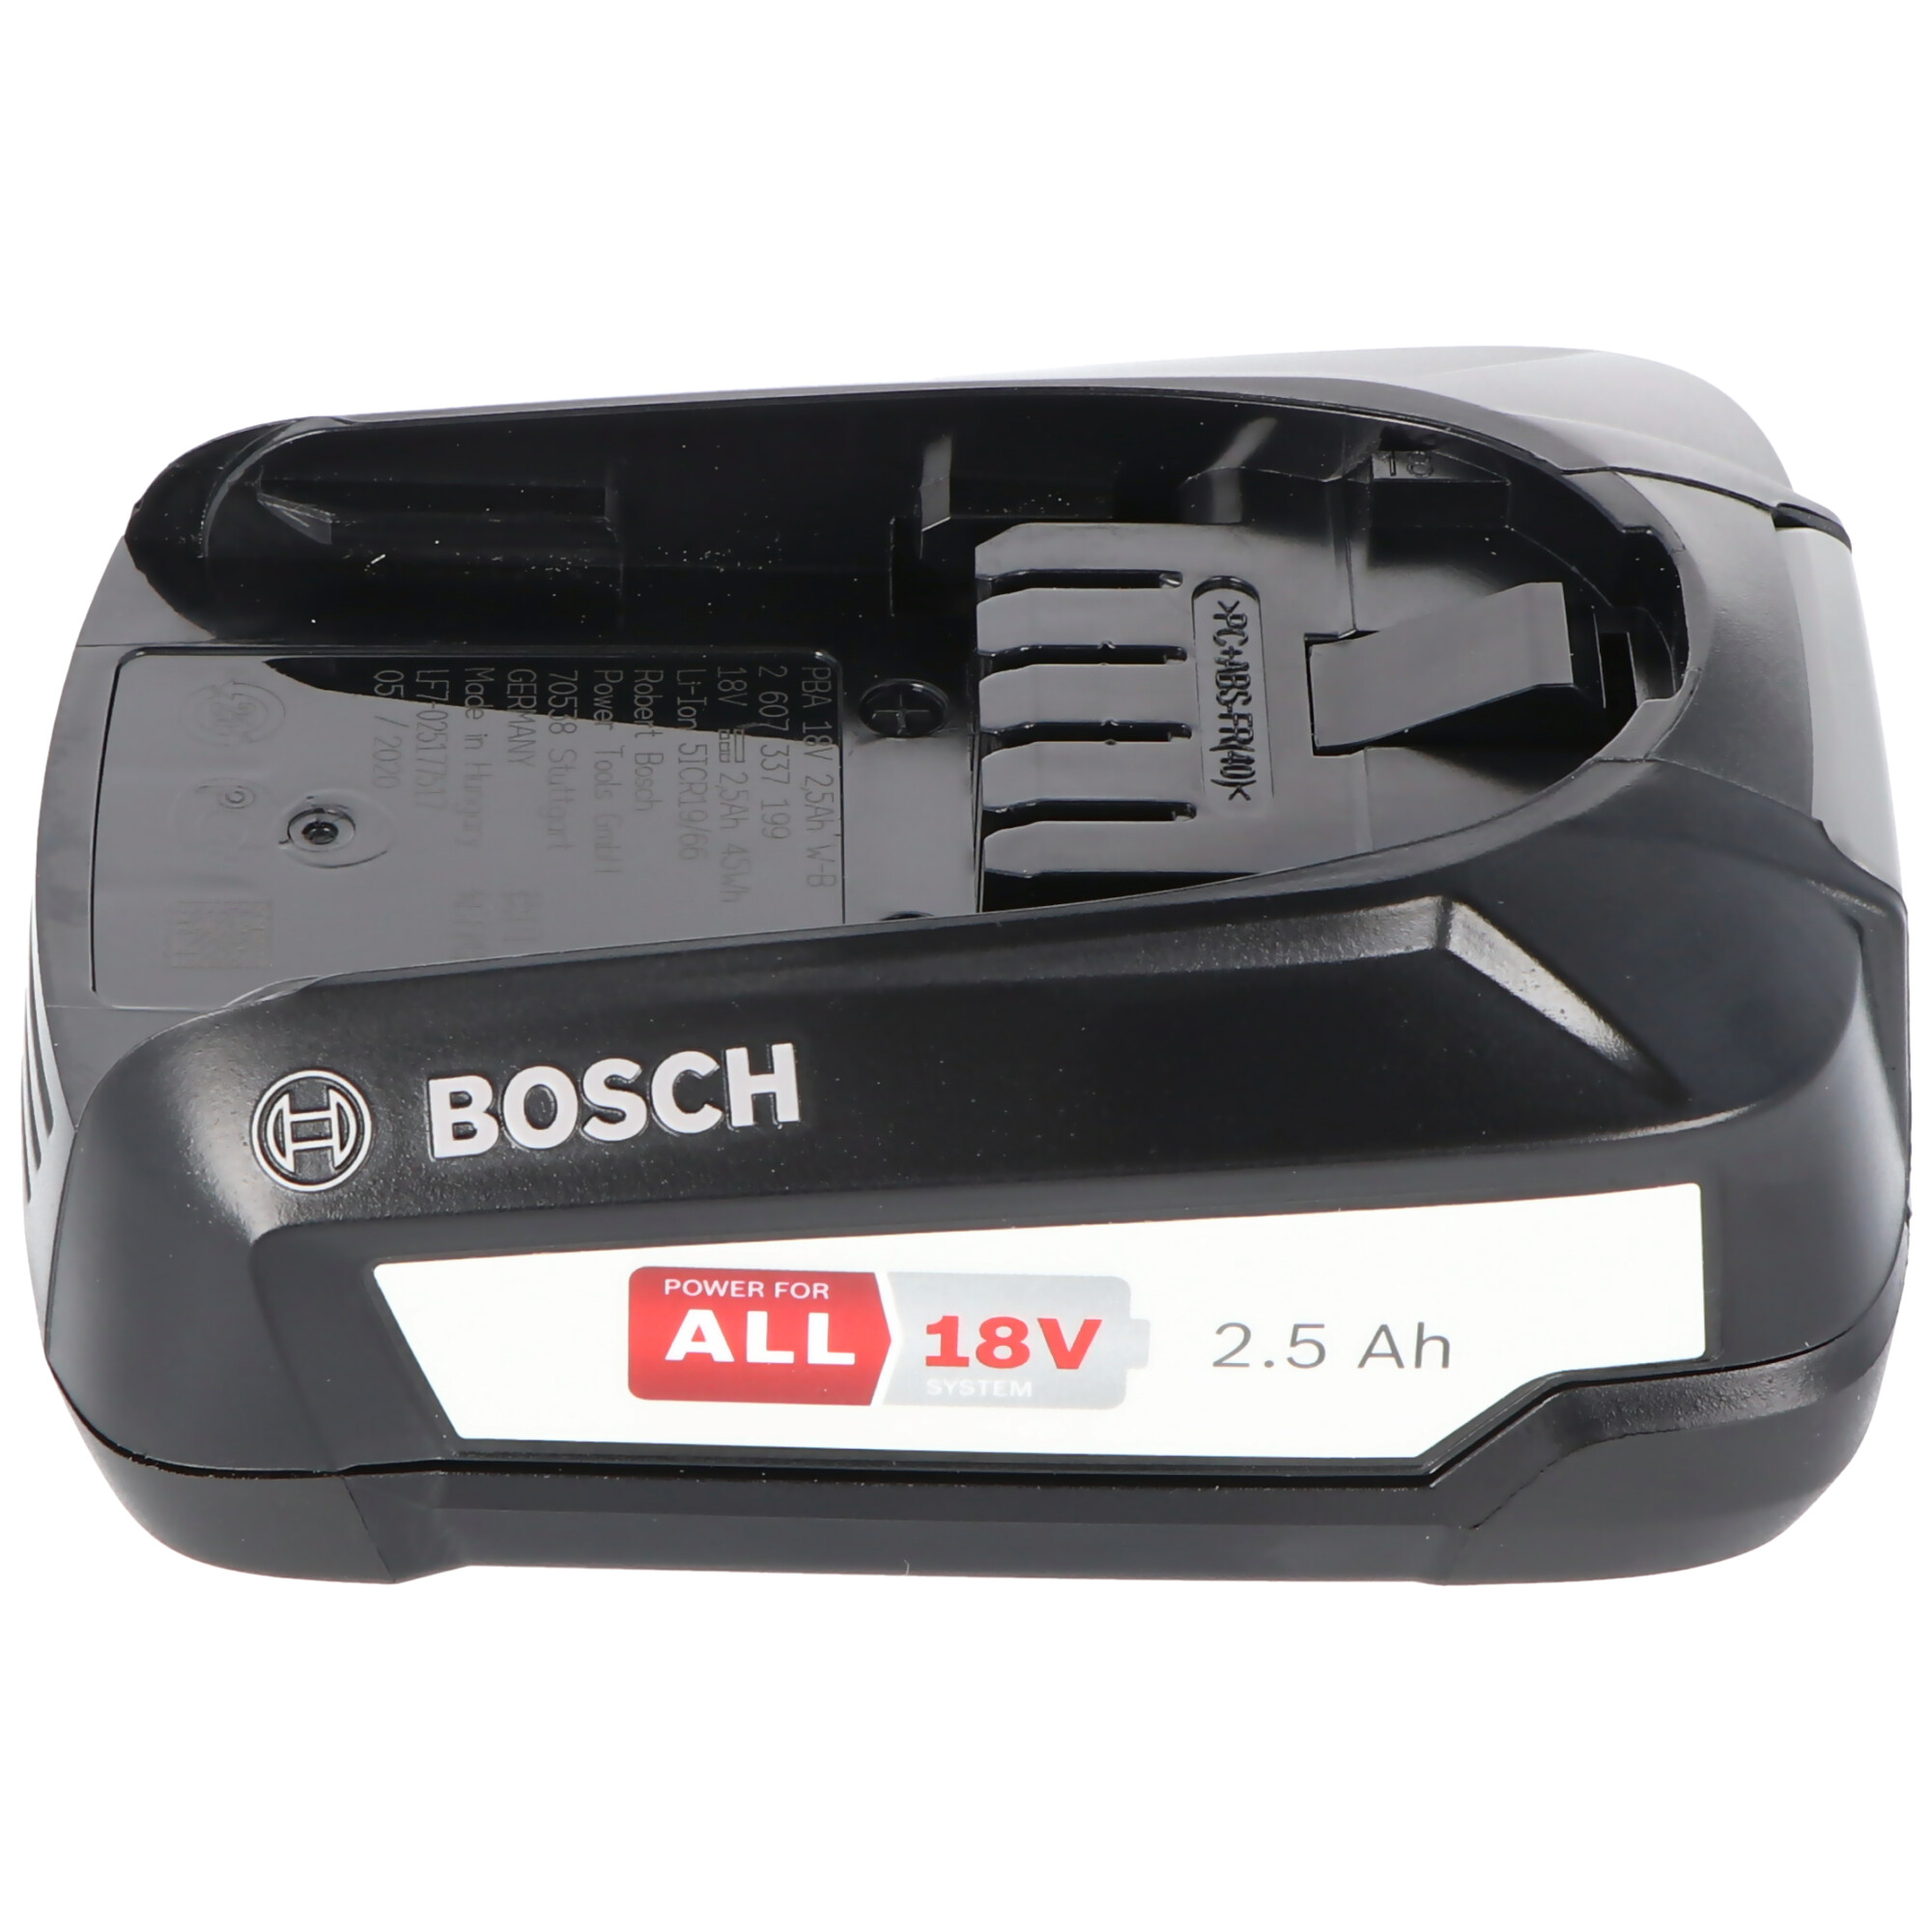 Bosch 18 Volt Ersatz Akku 2,5 Ah passend für alle Geräte des grünen Bosch Home und Garden Li-Ion 18 Volt Systems